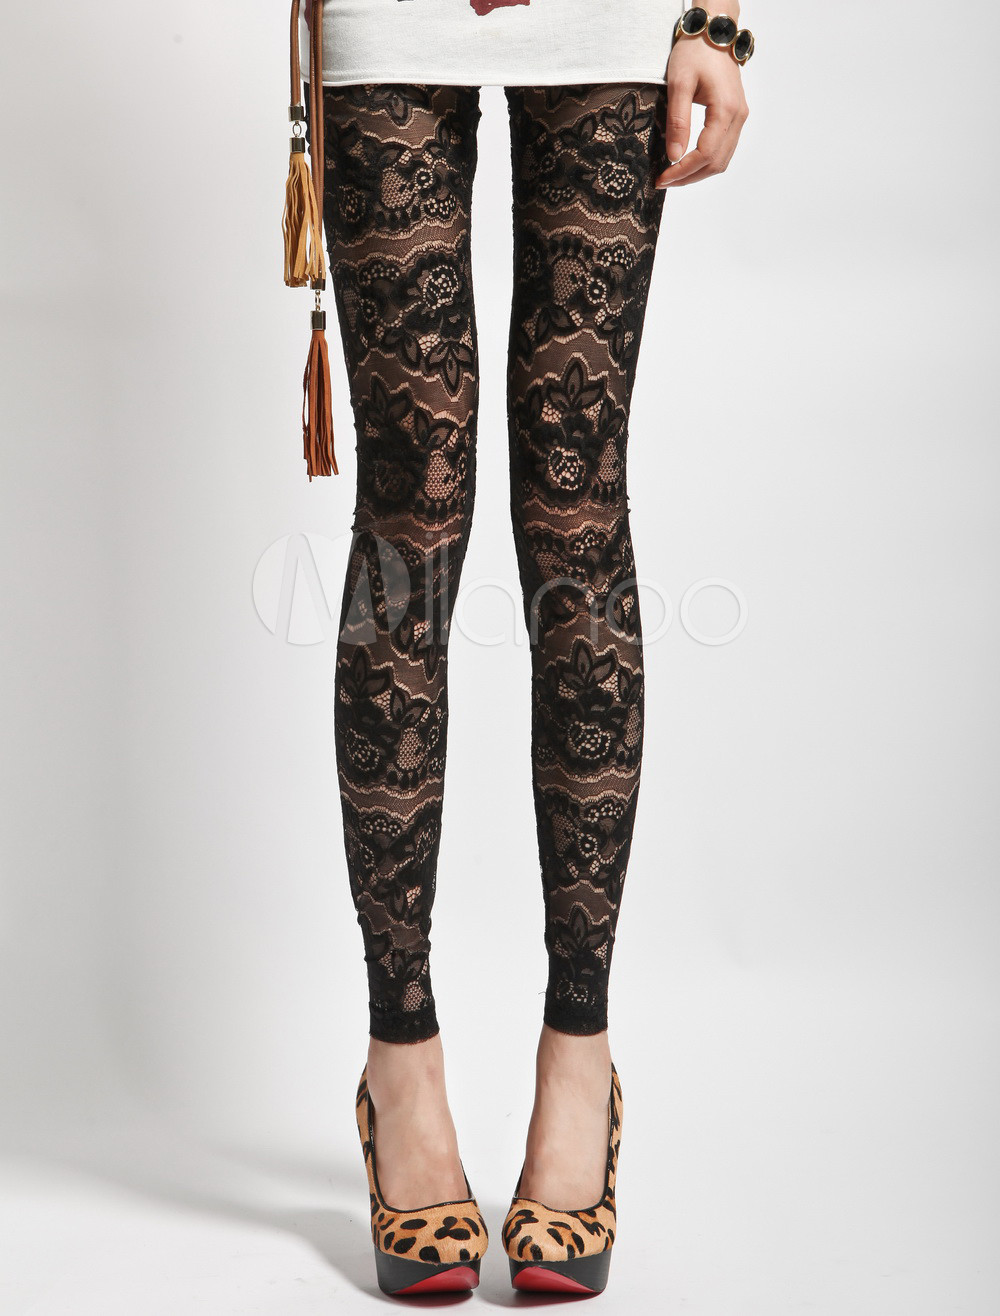 Cool Black Floral Print Lace Women's Leggings - Milanoo.com